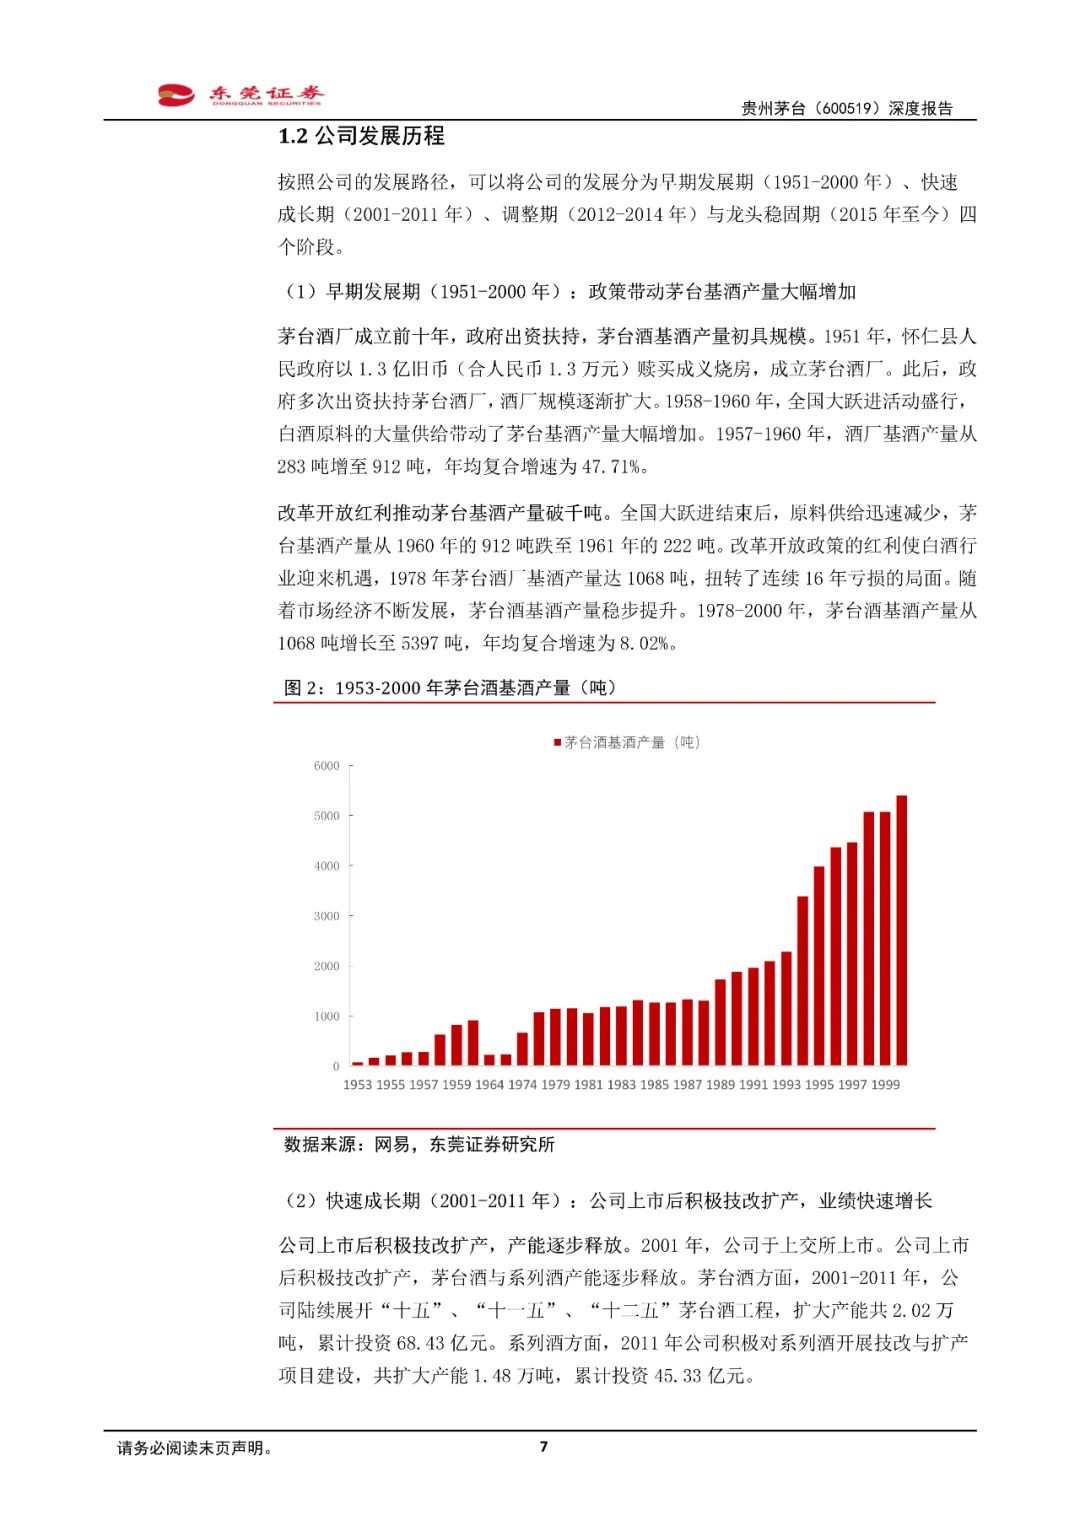 贵州茅台深度报告:峥嵘七十载,万亿白酒龙头行稳致远